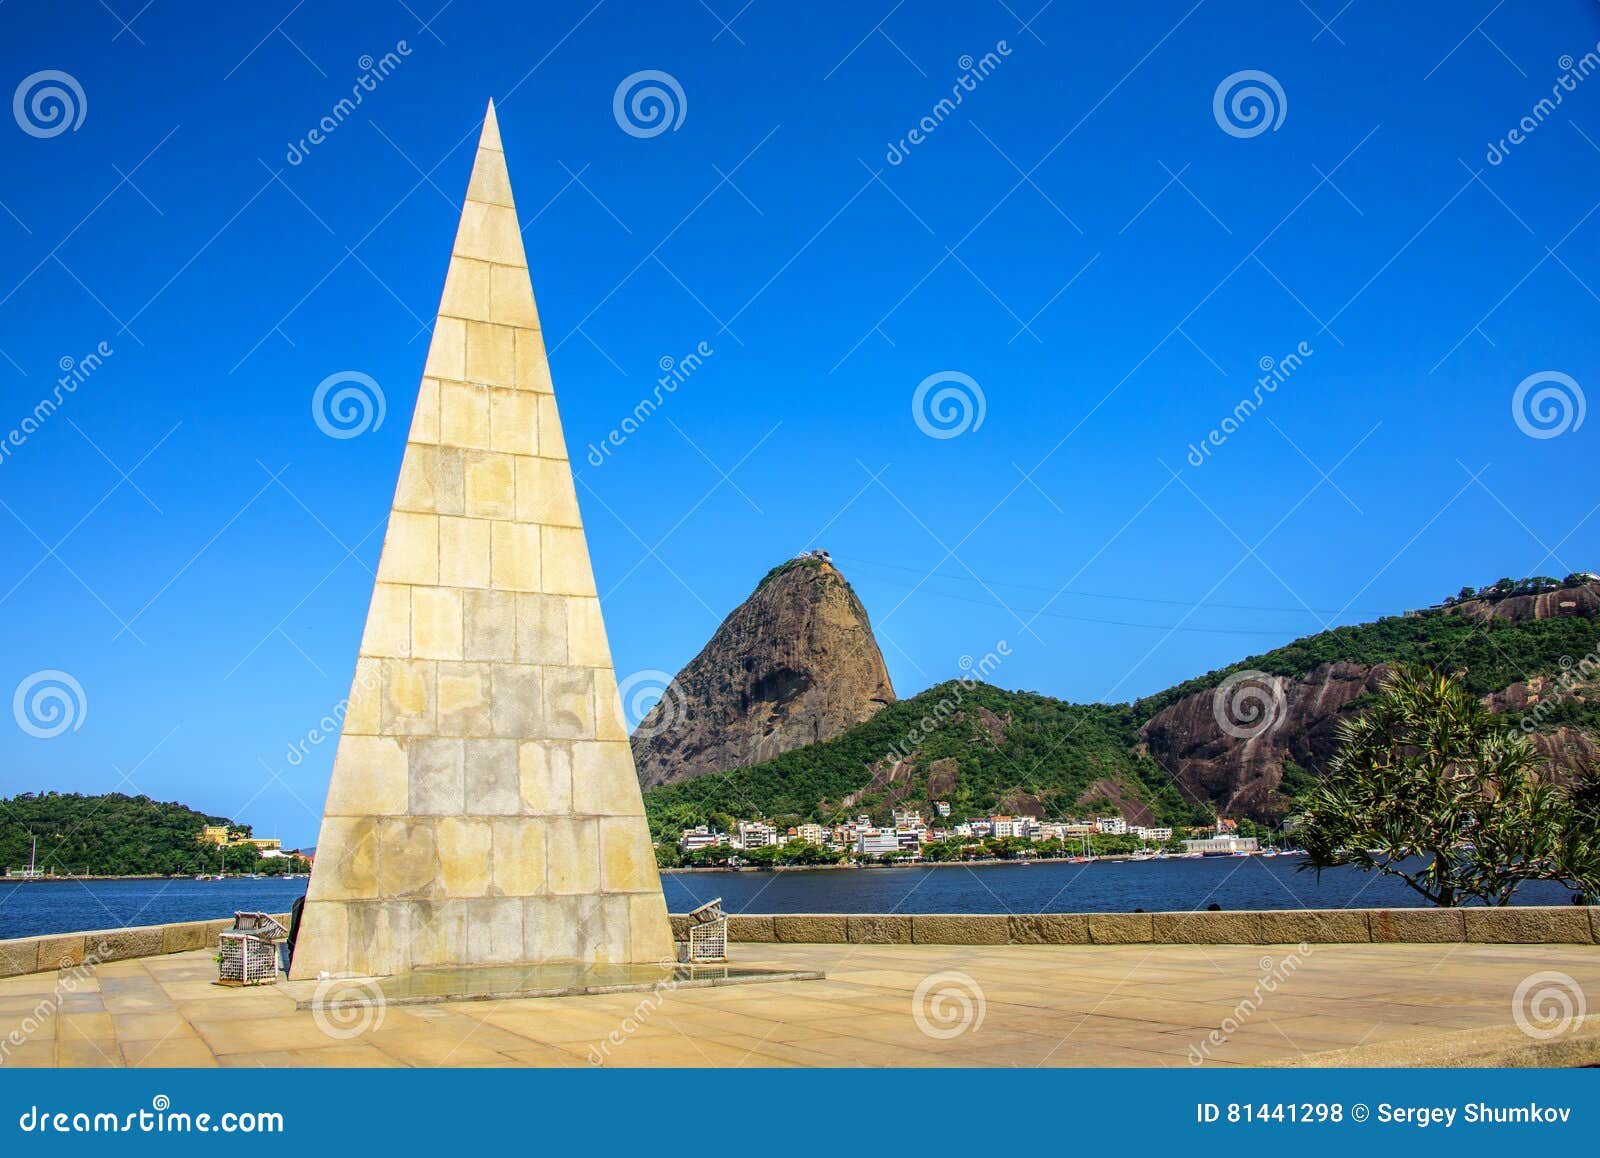 pyramid estacio de sa in park flamengo, rio de janeiro, brazil